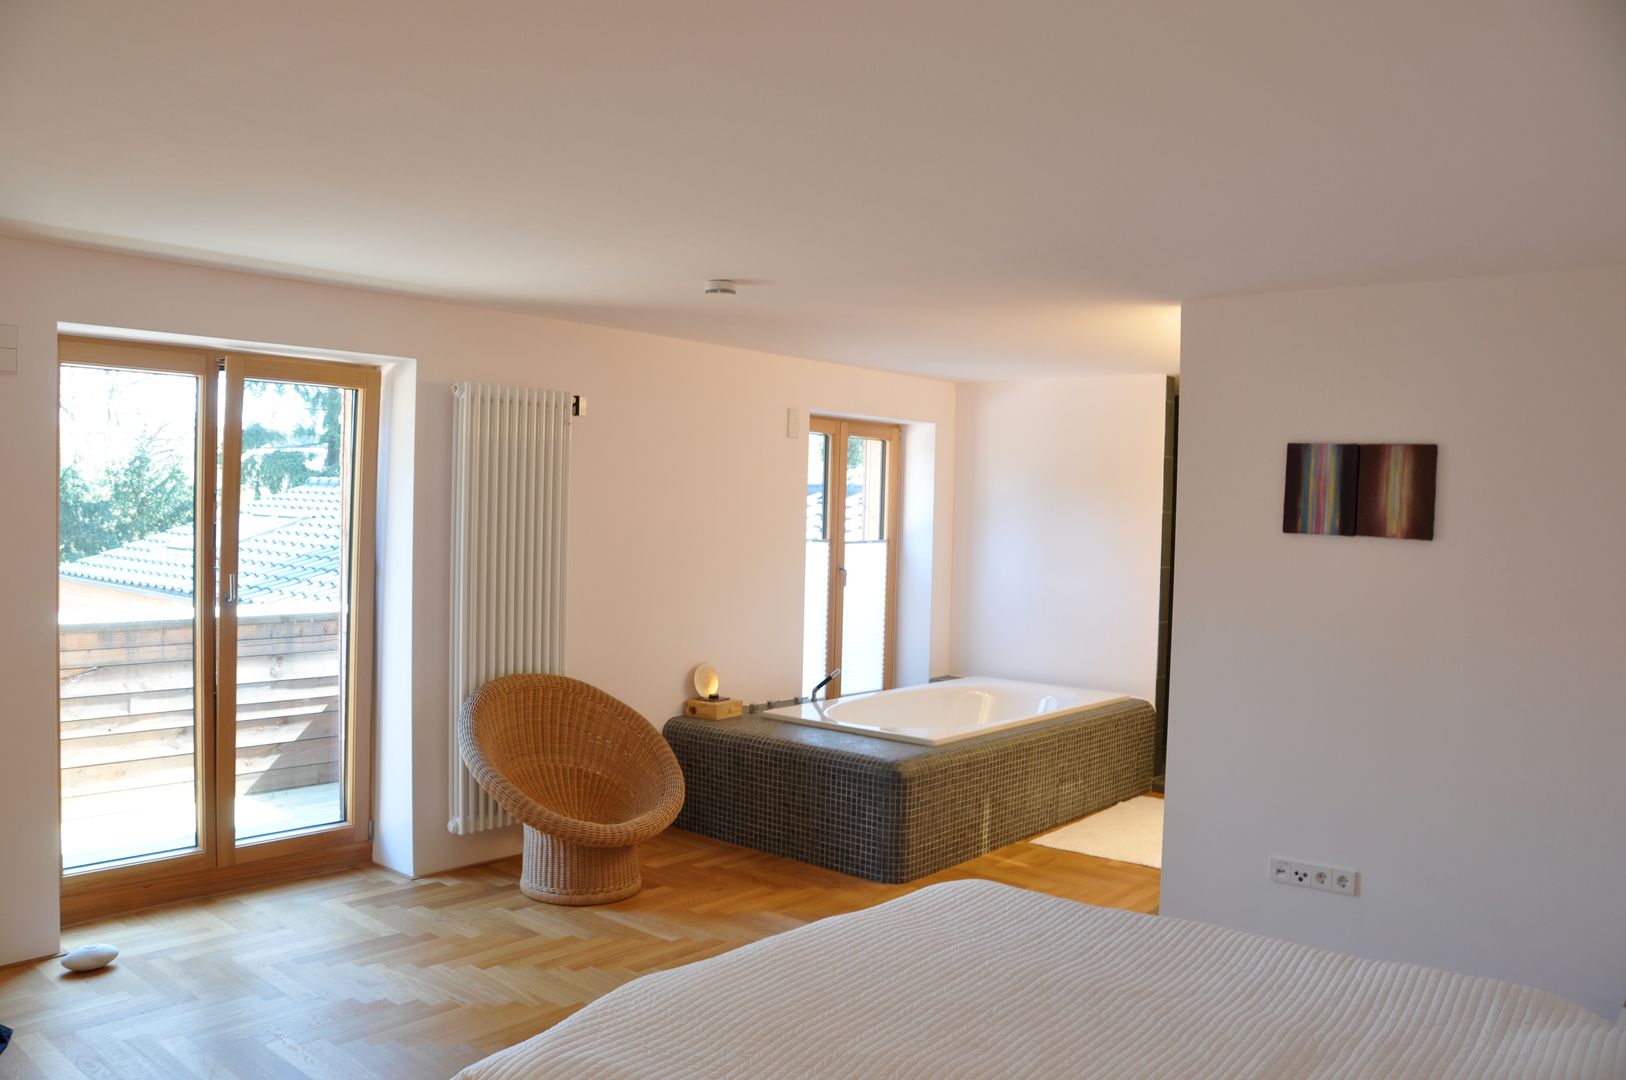 Haus Holl, Sanierung und Umgestaltung einer alten Villa, nagel + braunagel nagel + braunagel Dormitorios minimalistas